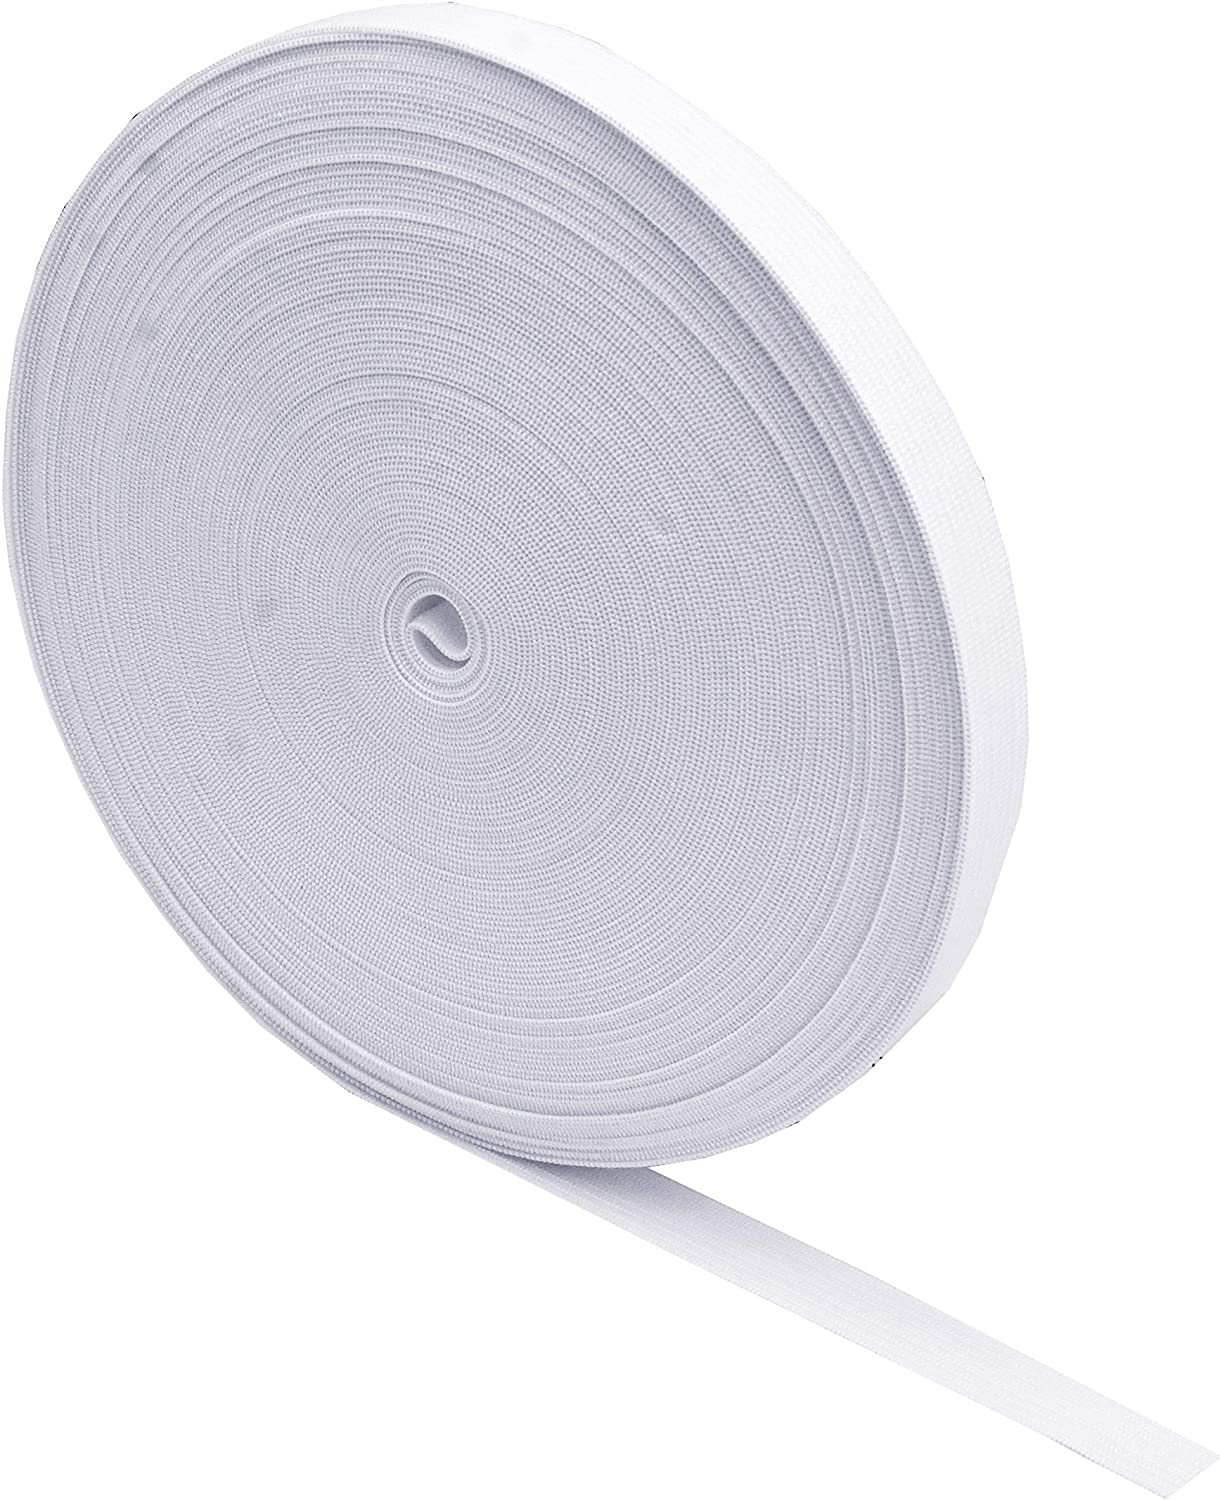 DYA Elastic Bands for Sewing 0.6 Inch x 12 Yards Knit Elastic Spool High  Elasticity (1 Roll White 0.6 Inch) 0.6 Inch x12 Yard x 1